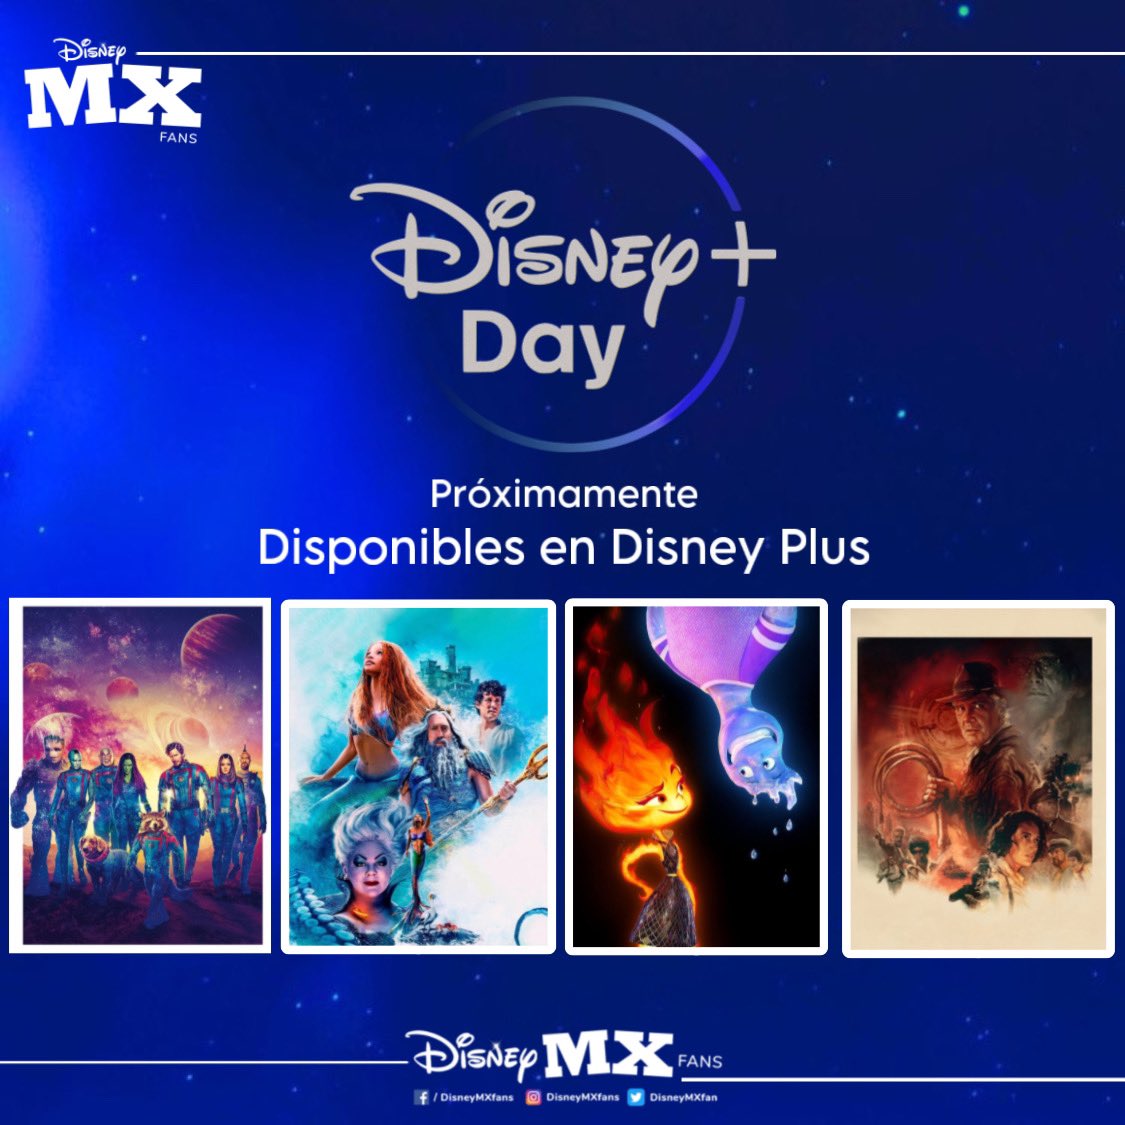 Durante el Disney Plus Day llegarán a la plataforma las 4 películas estrenadas en cines hasta el momento. 

Por ahora no se ha dado a conocer la fecha exacta del Disney Plus Day. 

#GuardianesDeLaGalaxiaVol3 #LaSirenita #Elementos #IndianaJones5